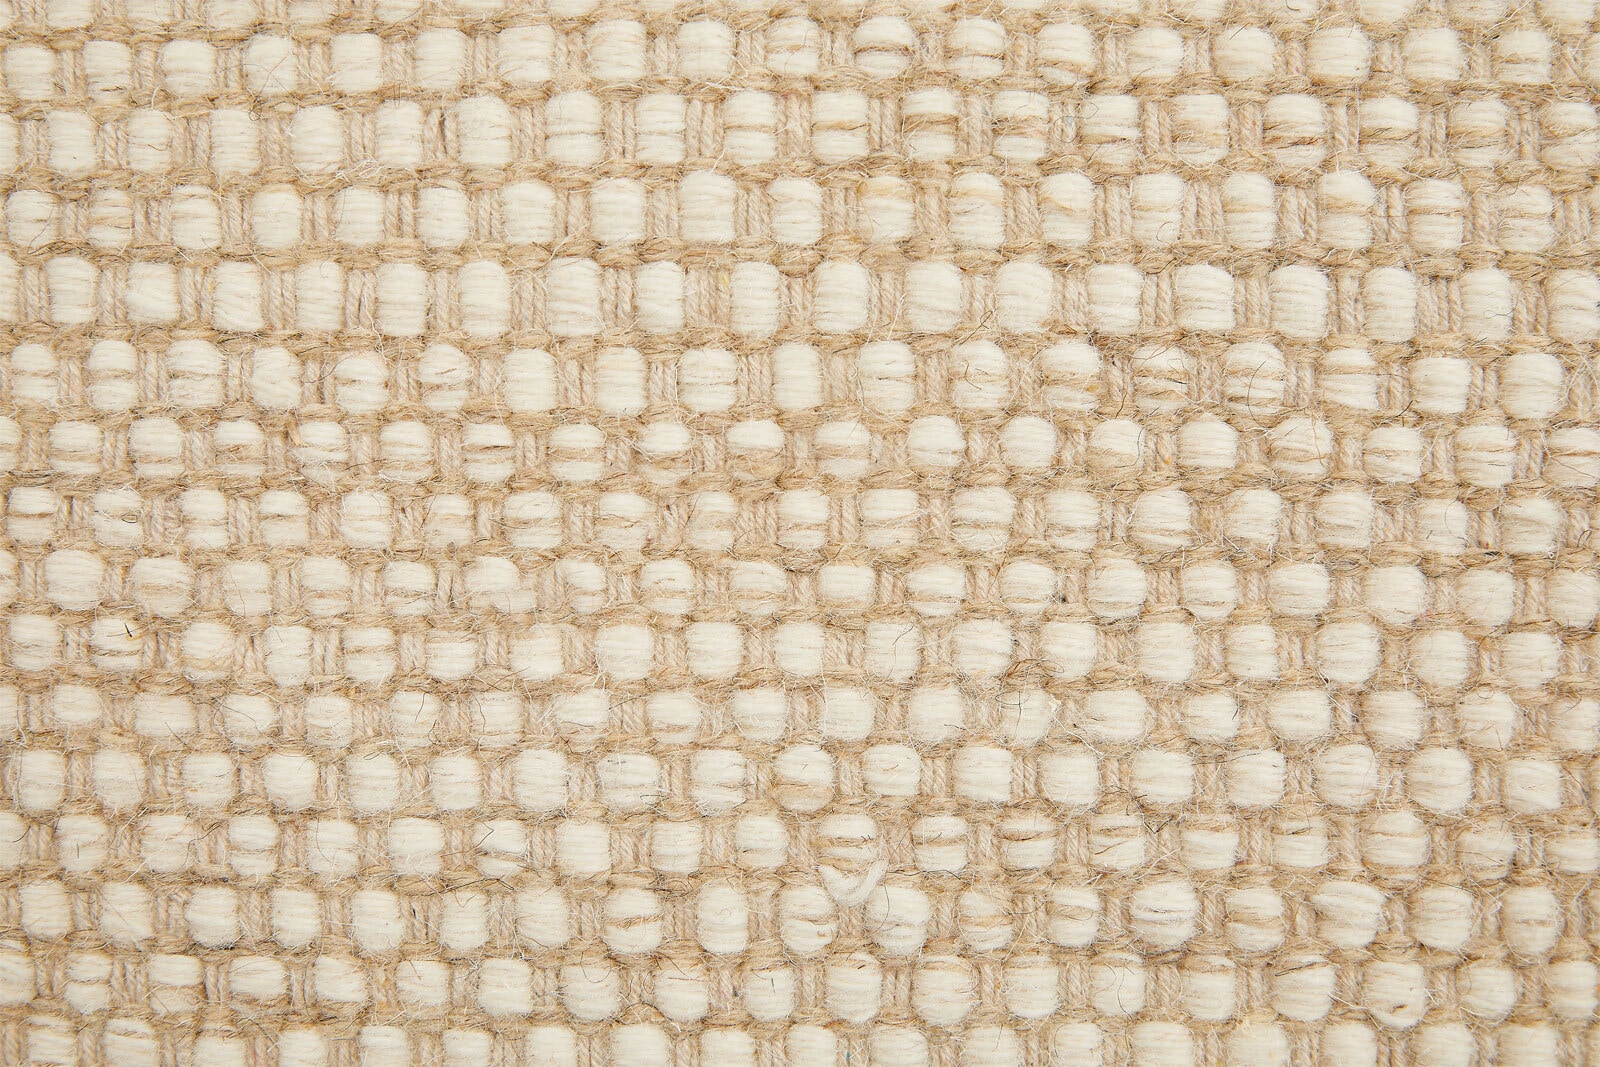 Wollteppich VISBY 160 x 230 cm beige/creme